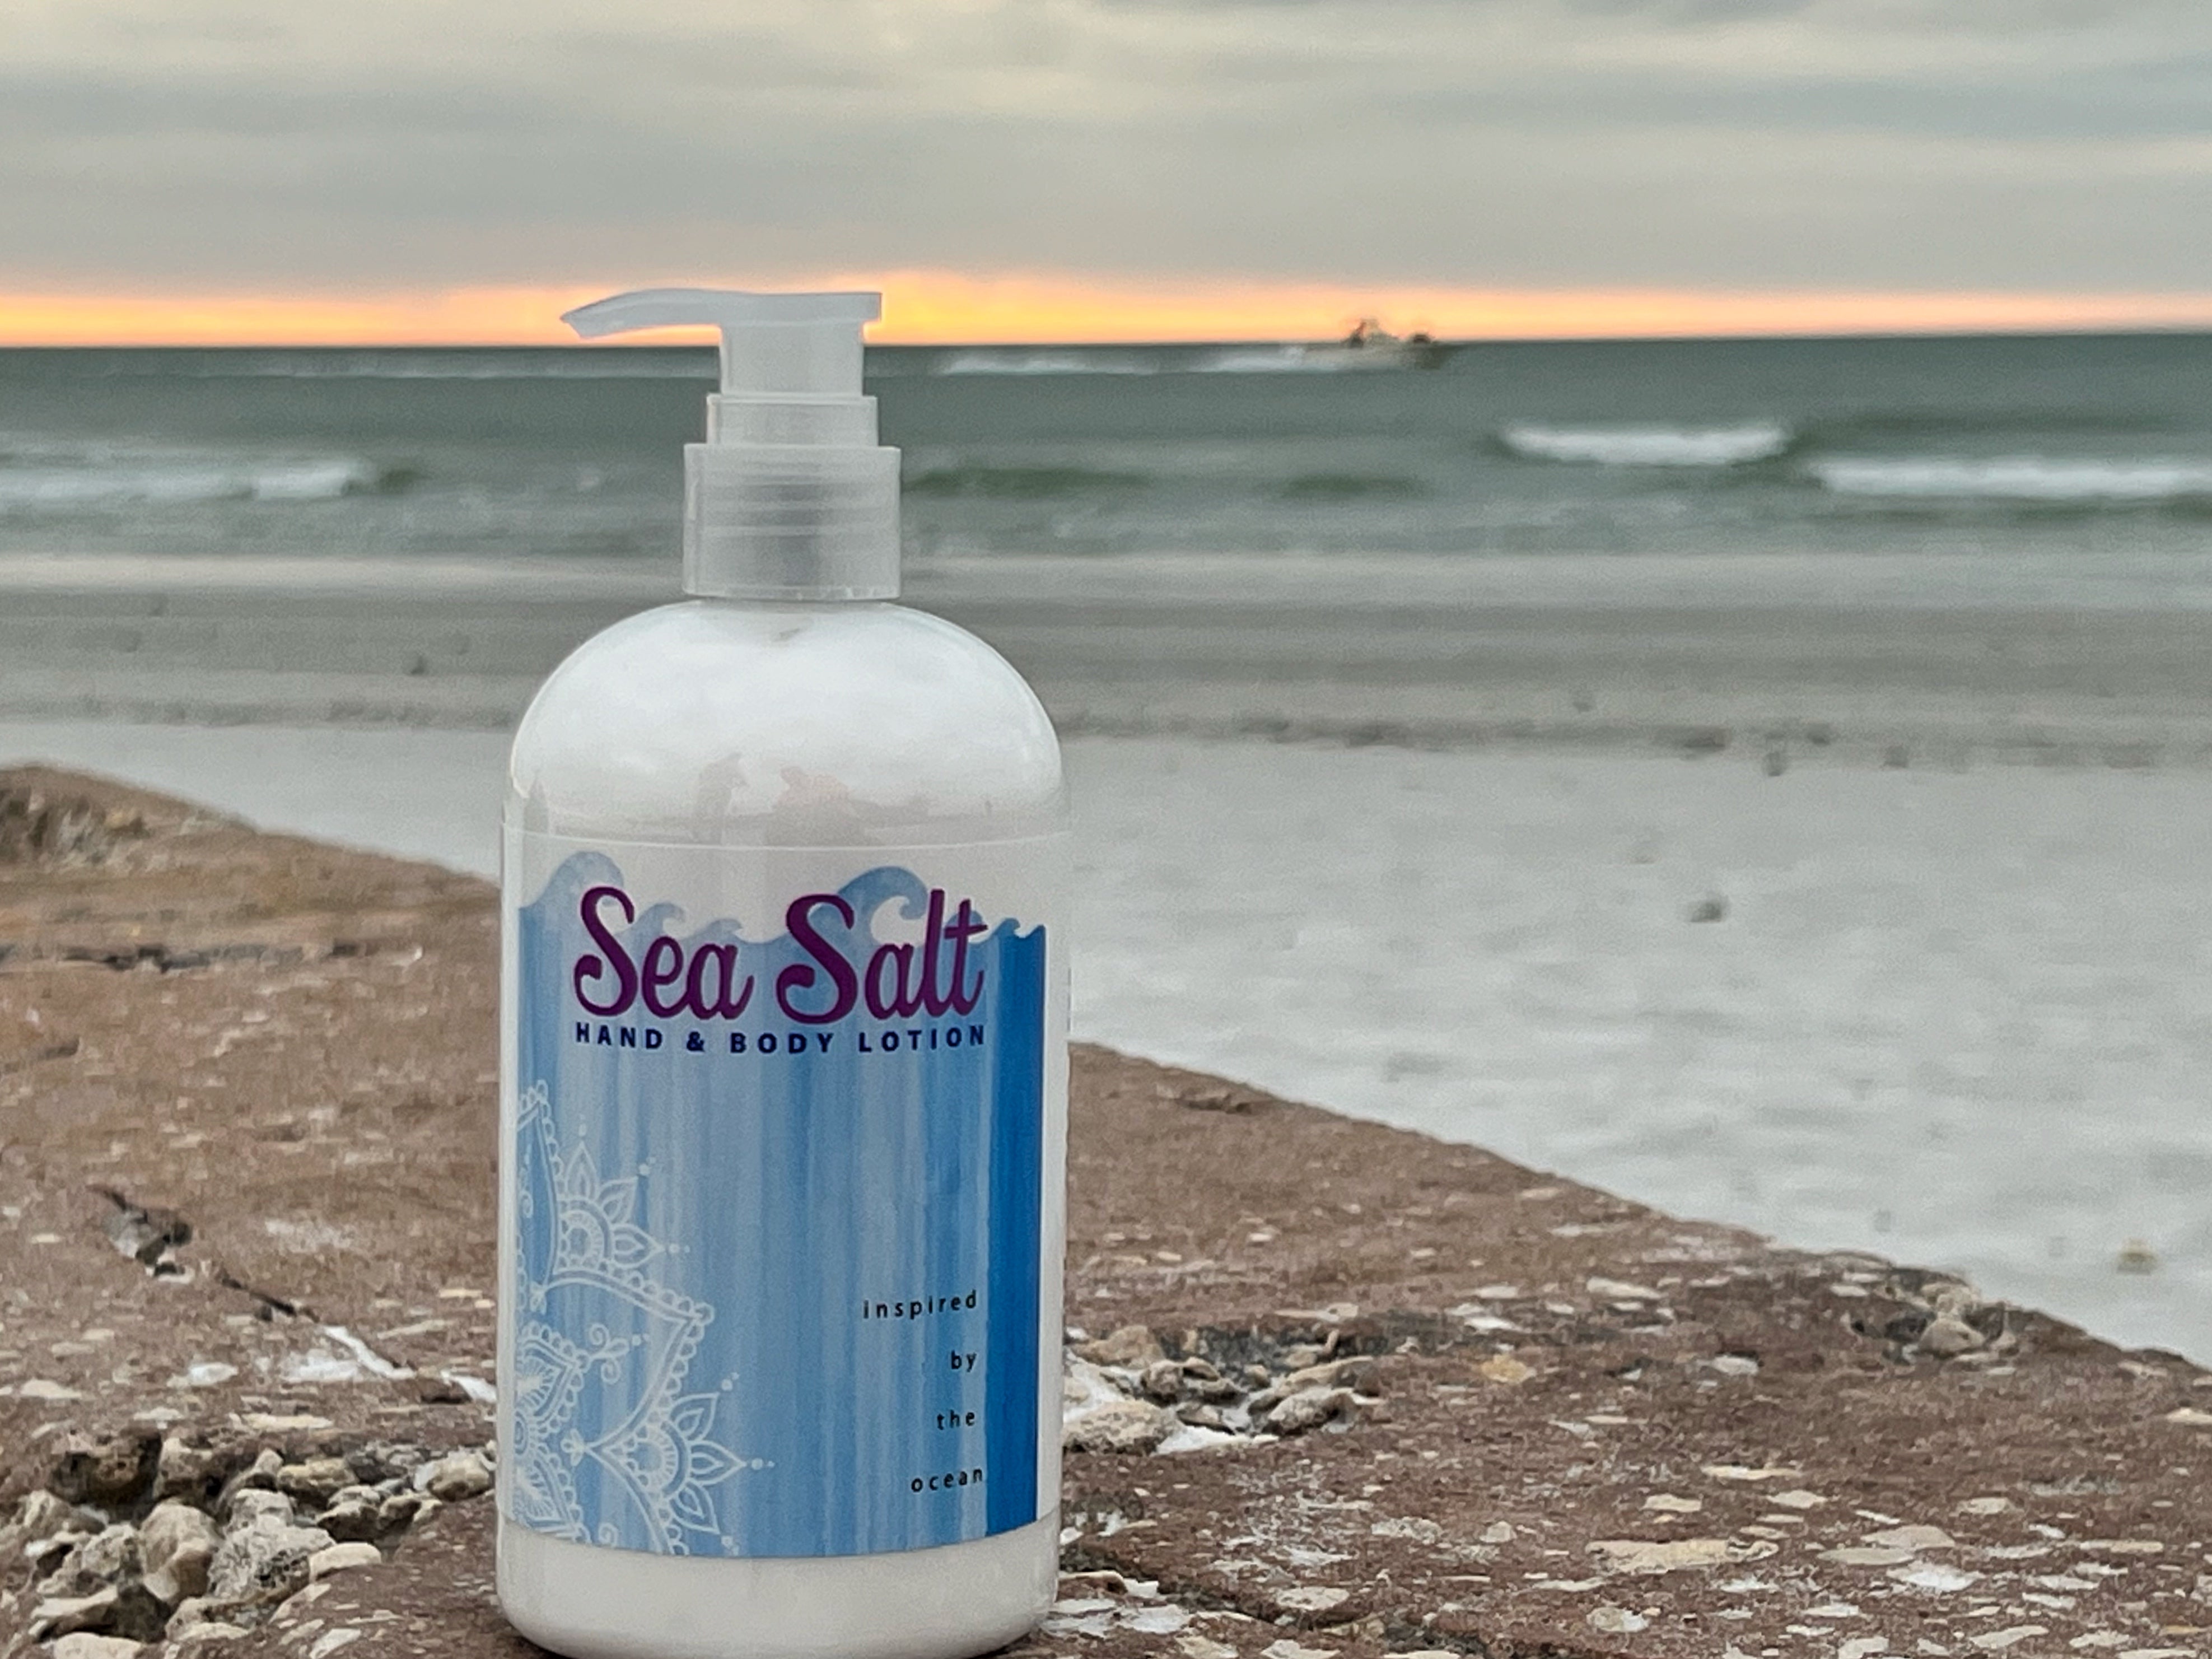 SEA SALT HAND & BODY LOTION 16 oz or 2 oz